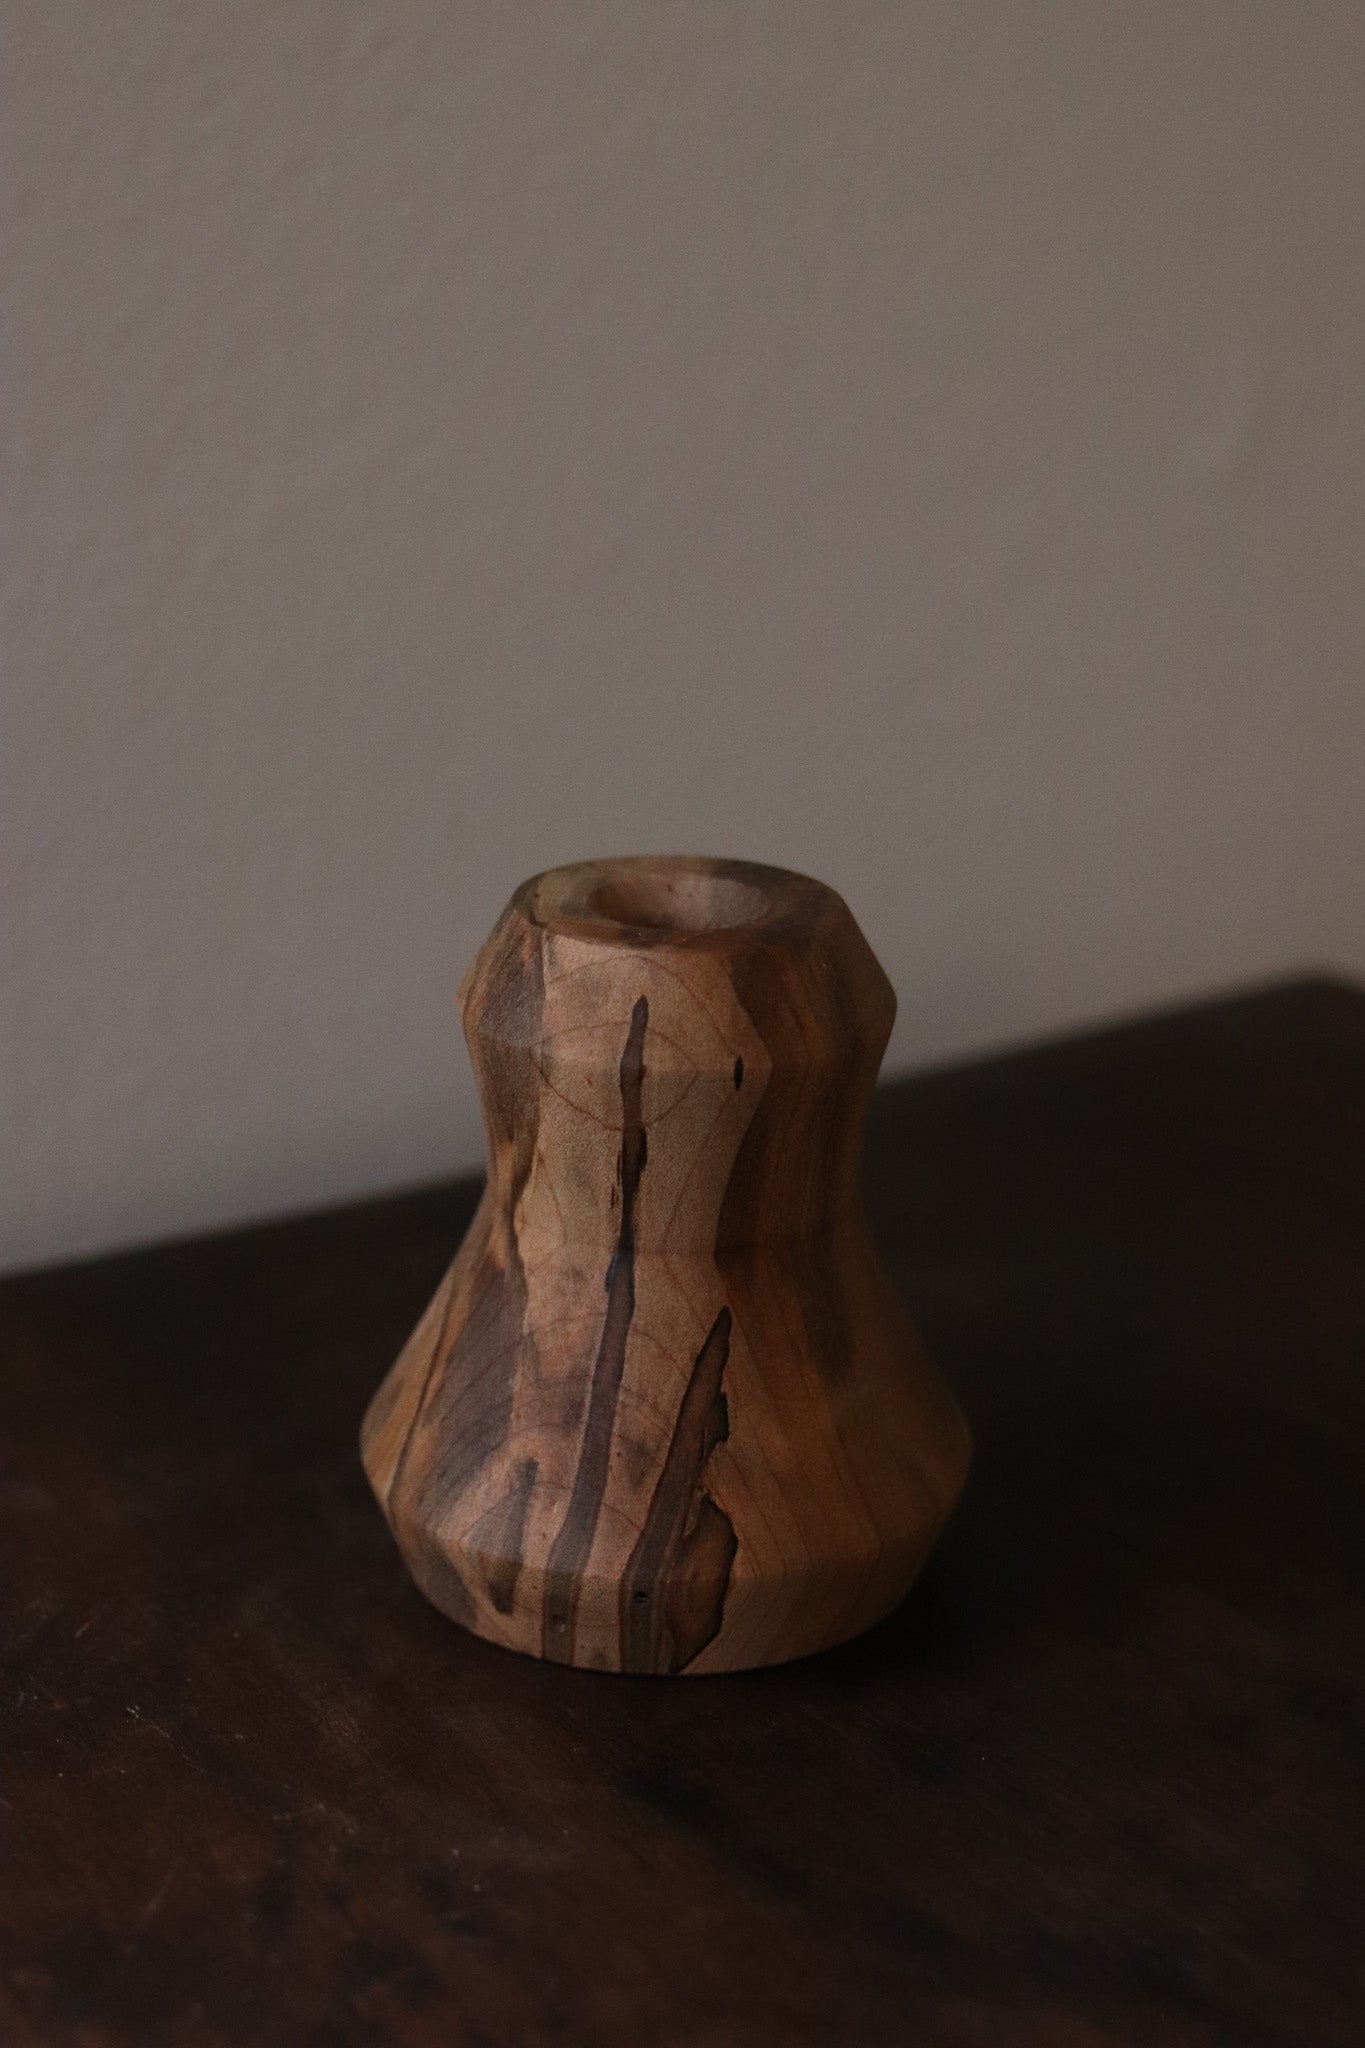 Hand-turned Miniature Vases - Batch 1 - Vase 07